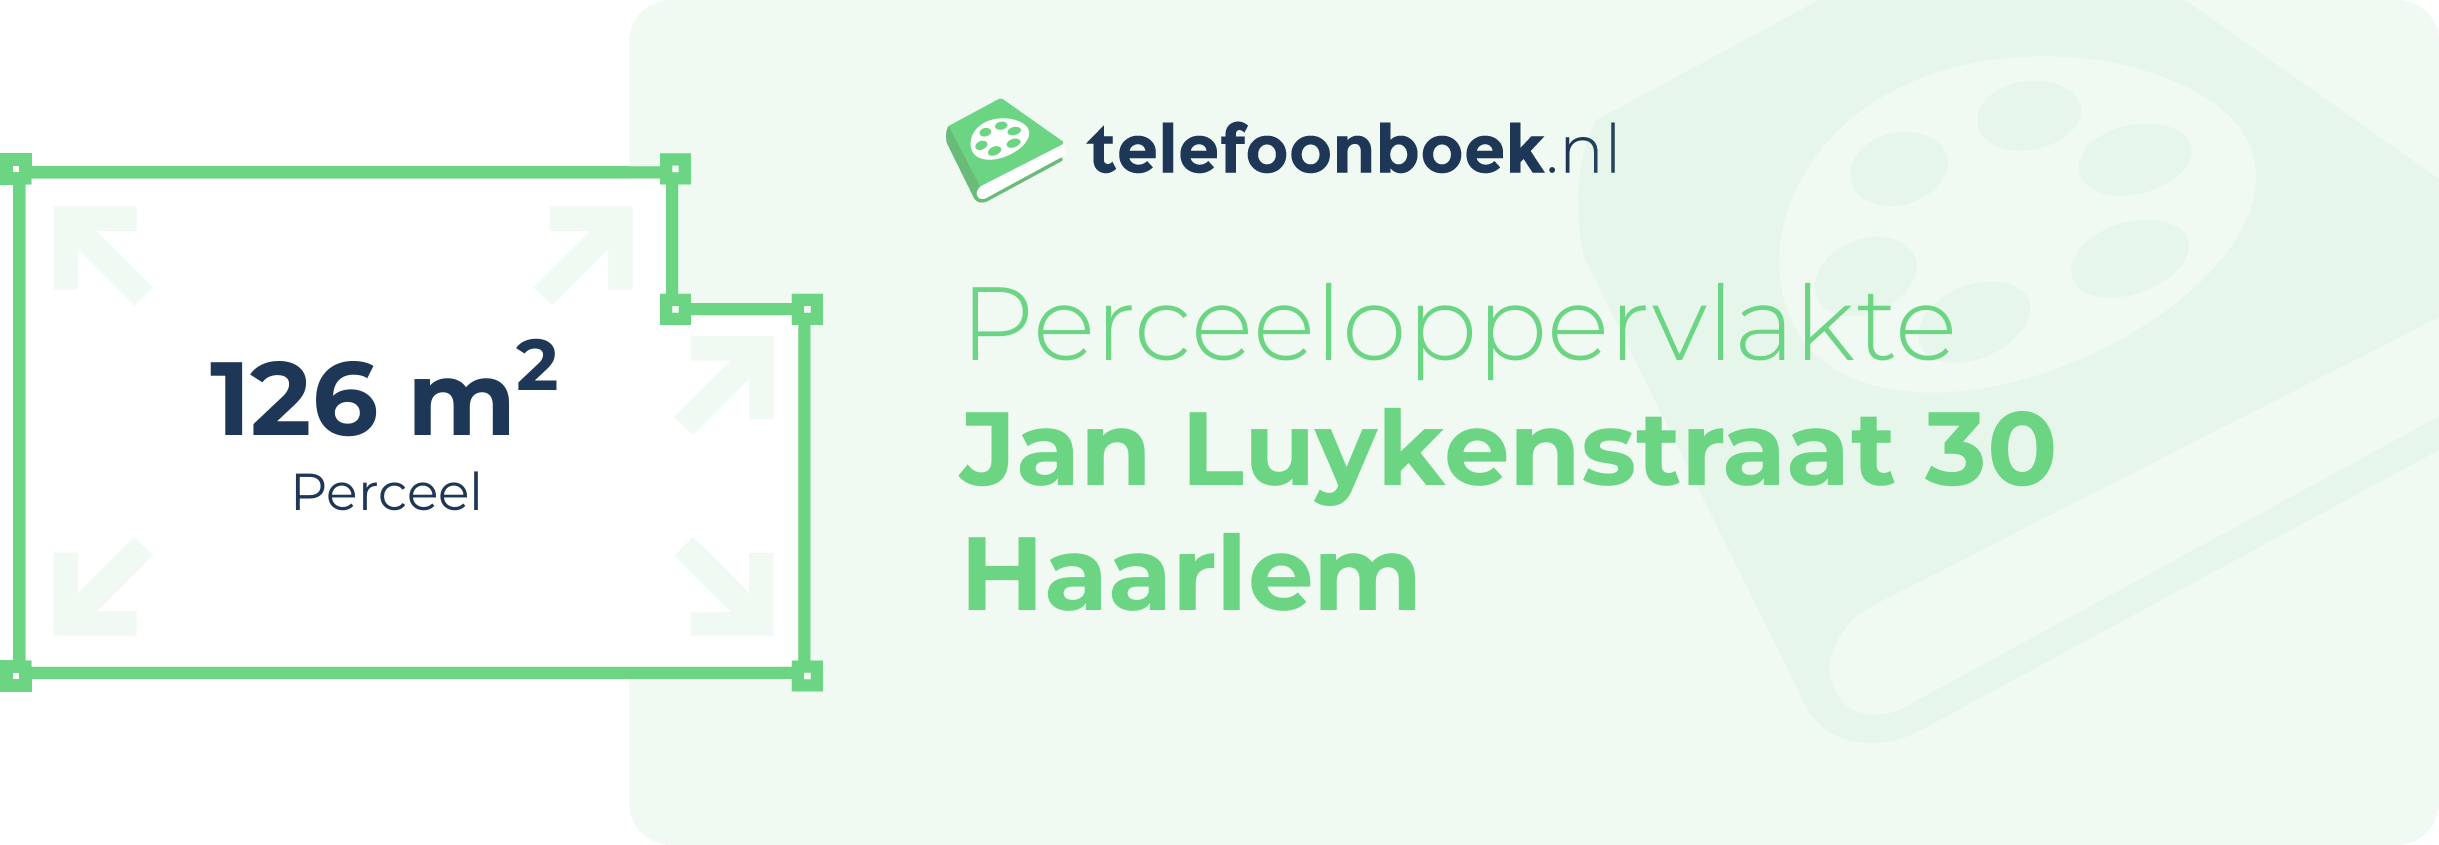 Perceeloppervlakte Jan Luykenstraat 30 Haarlem